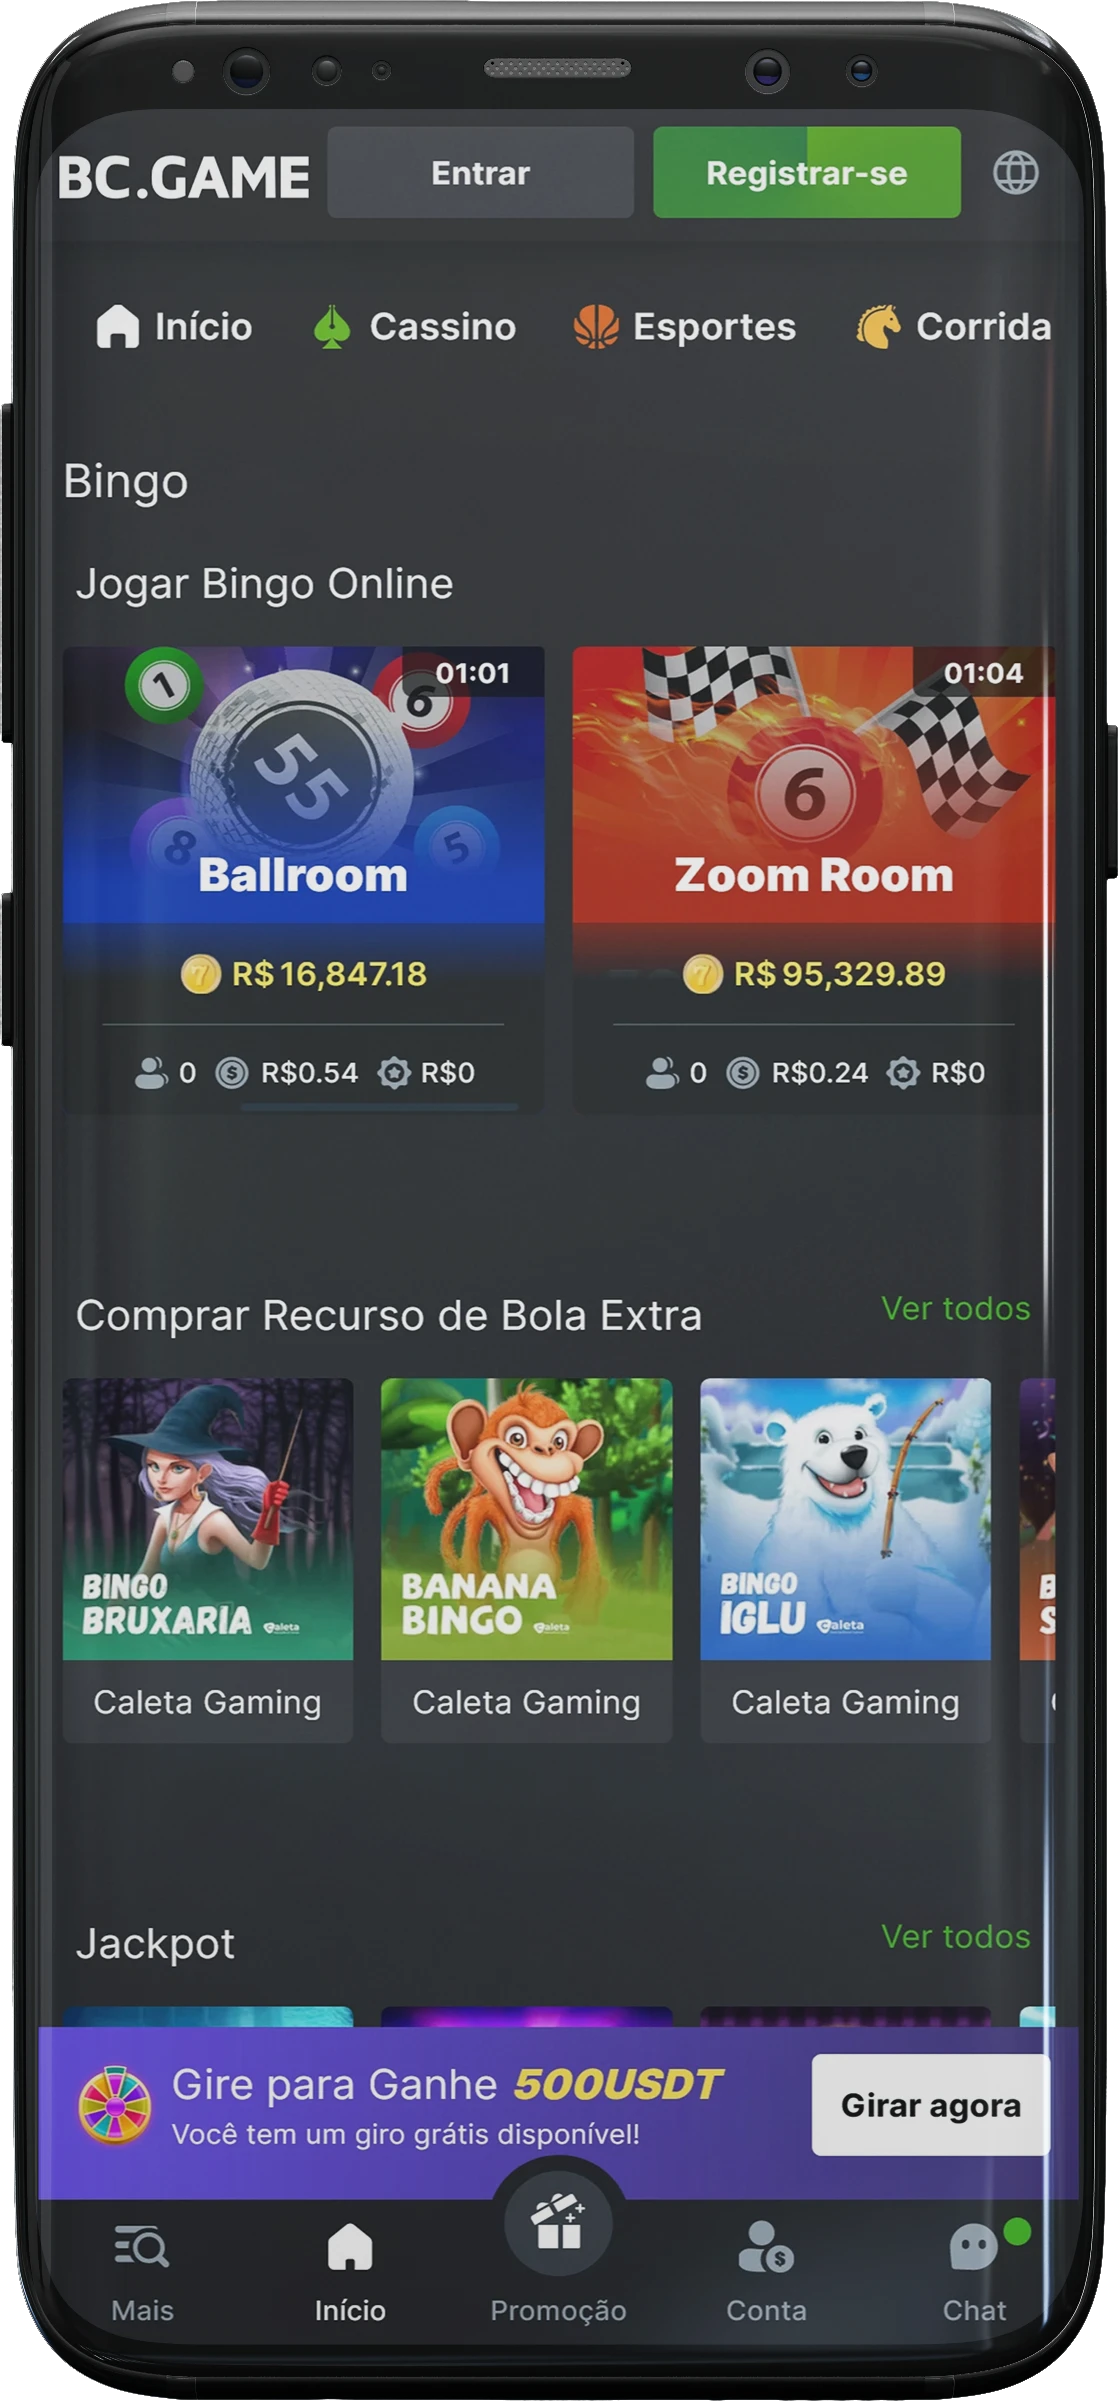 Captura de tela da seção de bingo do aplicativo BC.game